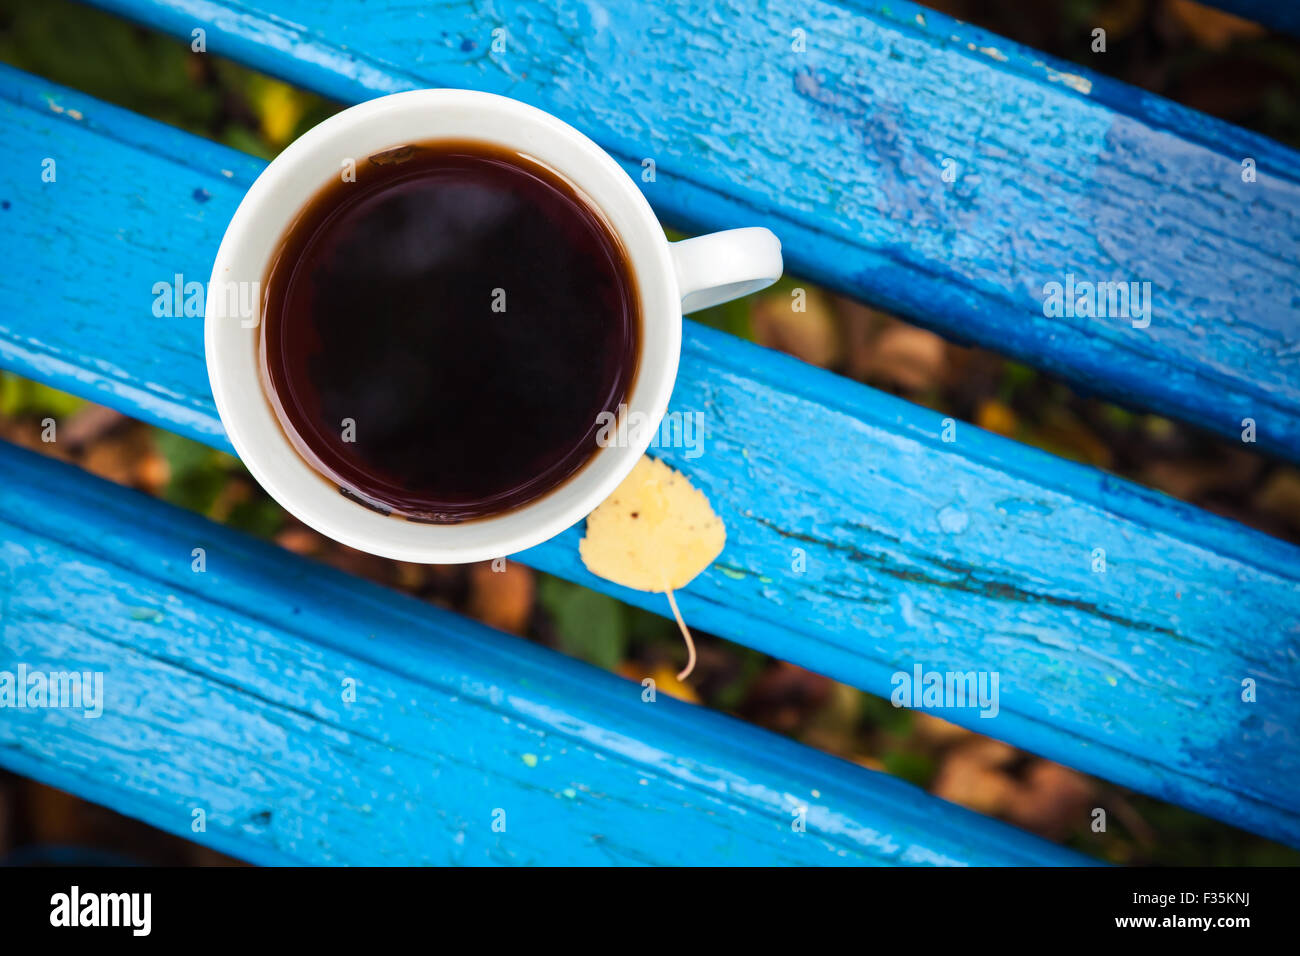 White tazza di tè nero è il vecchio blu panca in legno nel parco d'autunno. Messa a fuoco selettiva con DOF poco profondo, vista dall'alto Foto Stock